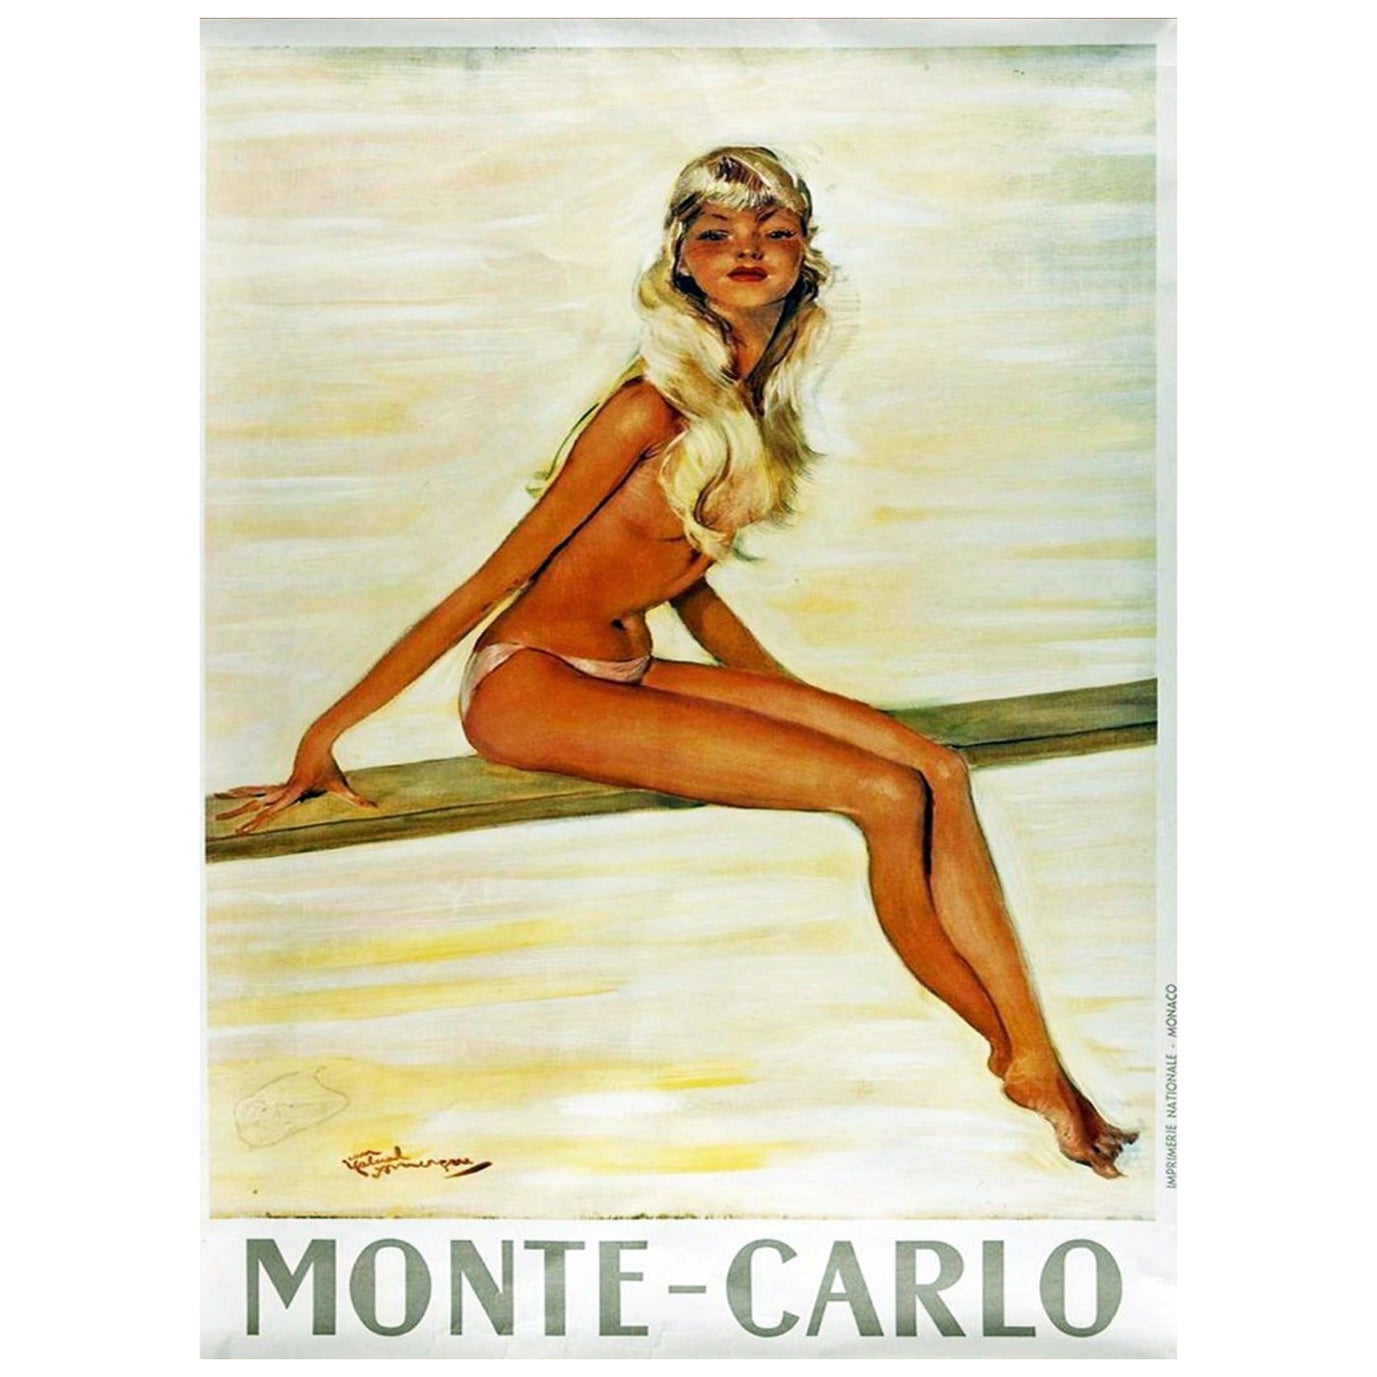 1950 Monte-Carlo Original Vintage Poster